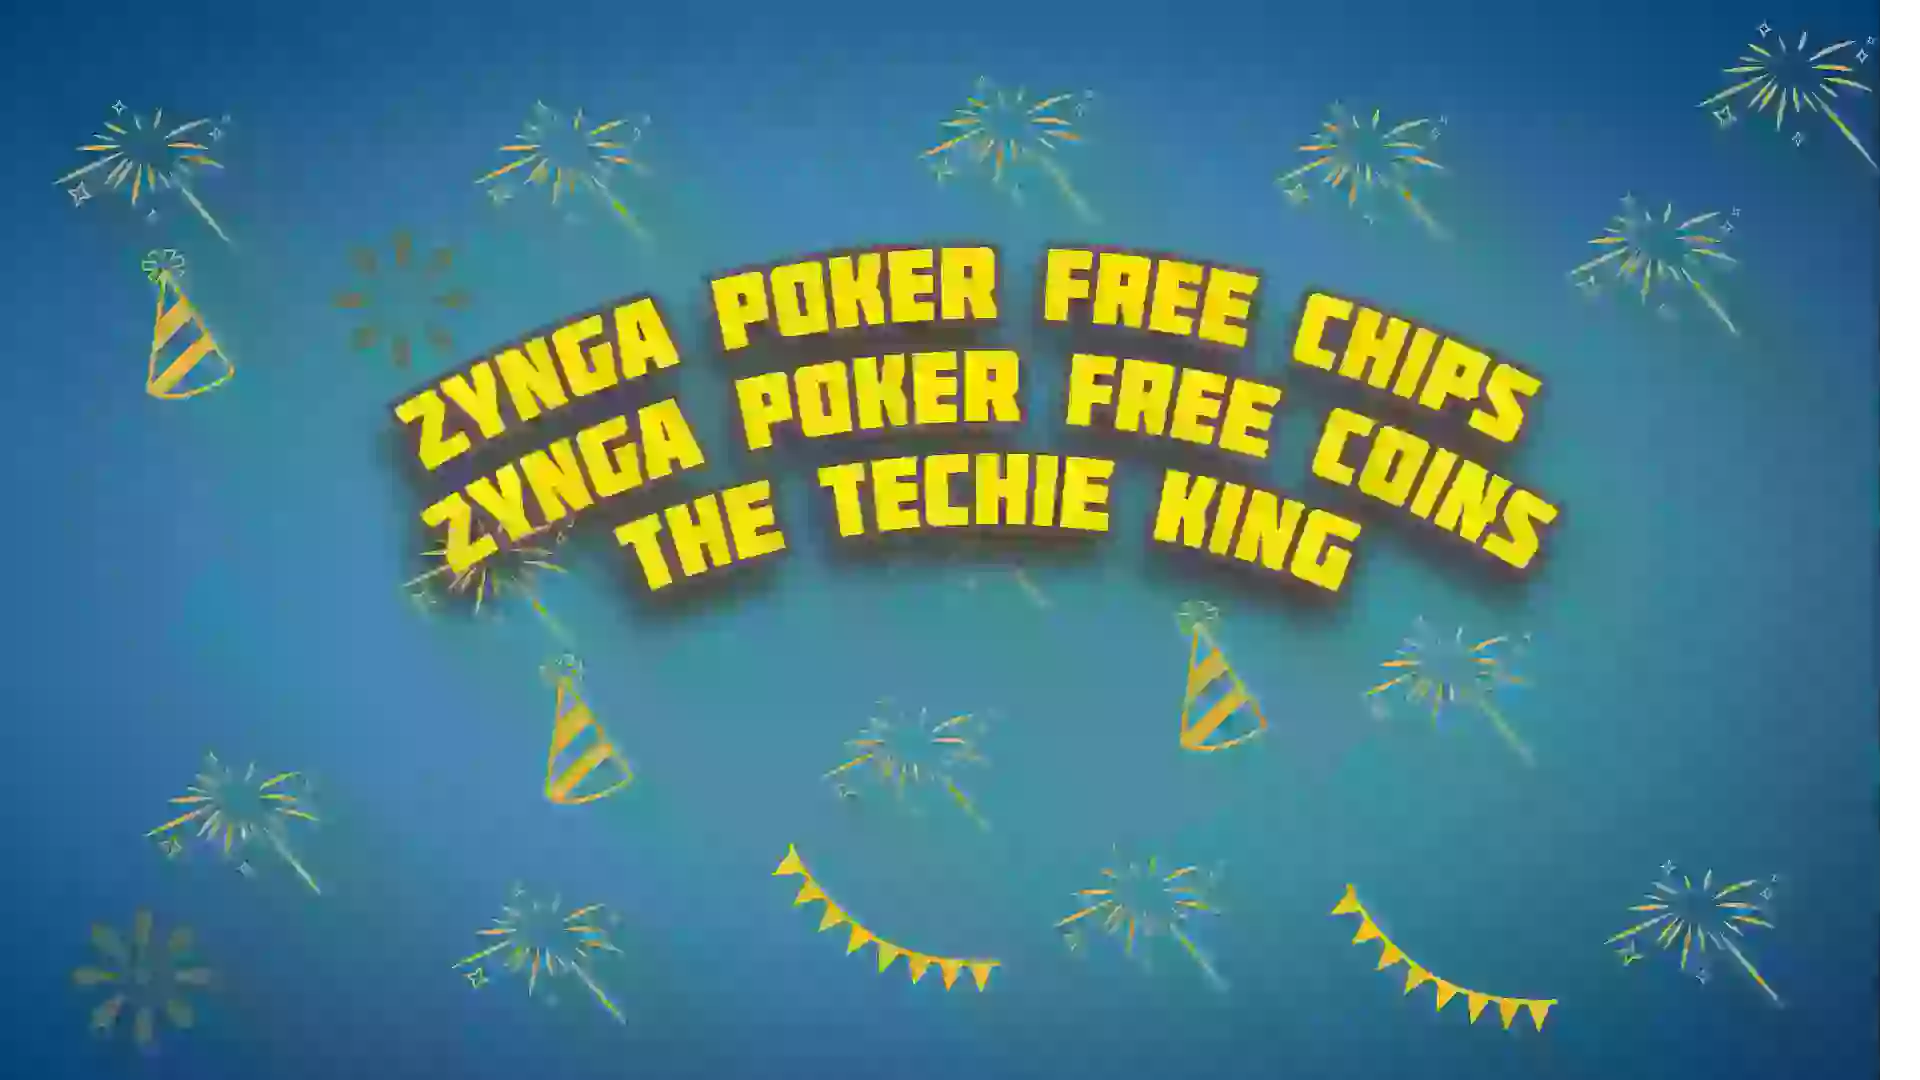 zynga poker free chips 2022 | zynga poker free chips daily